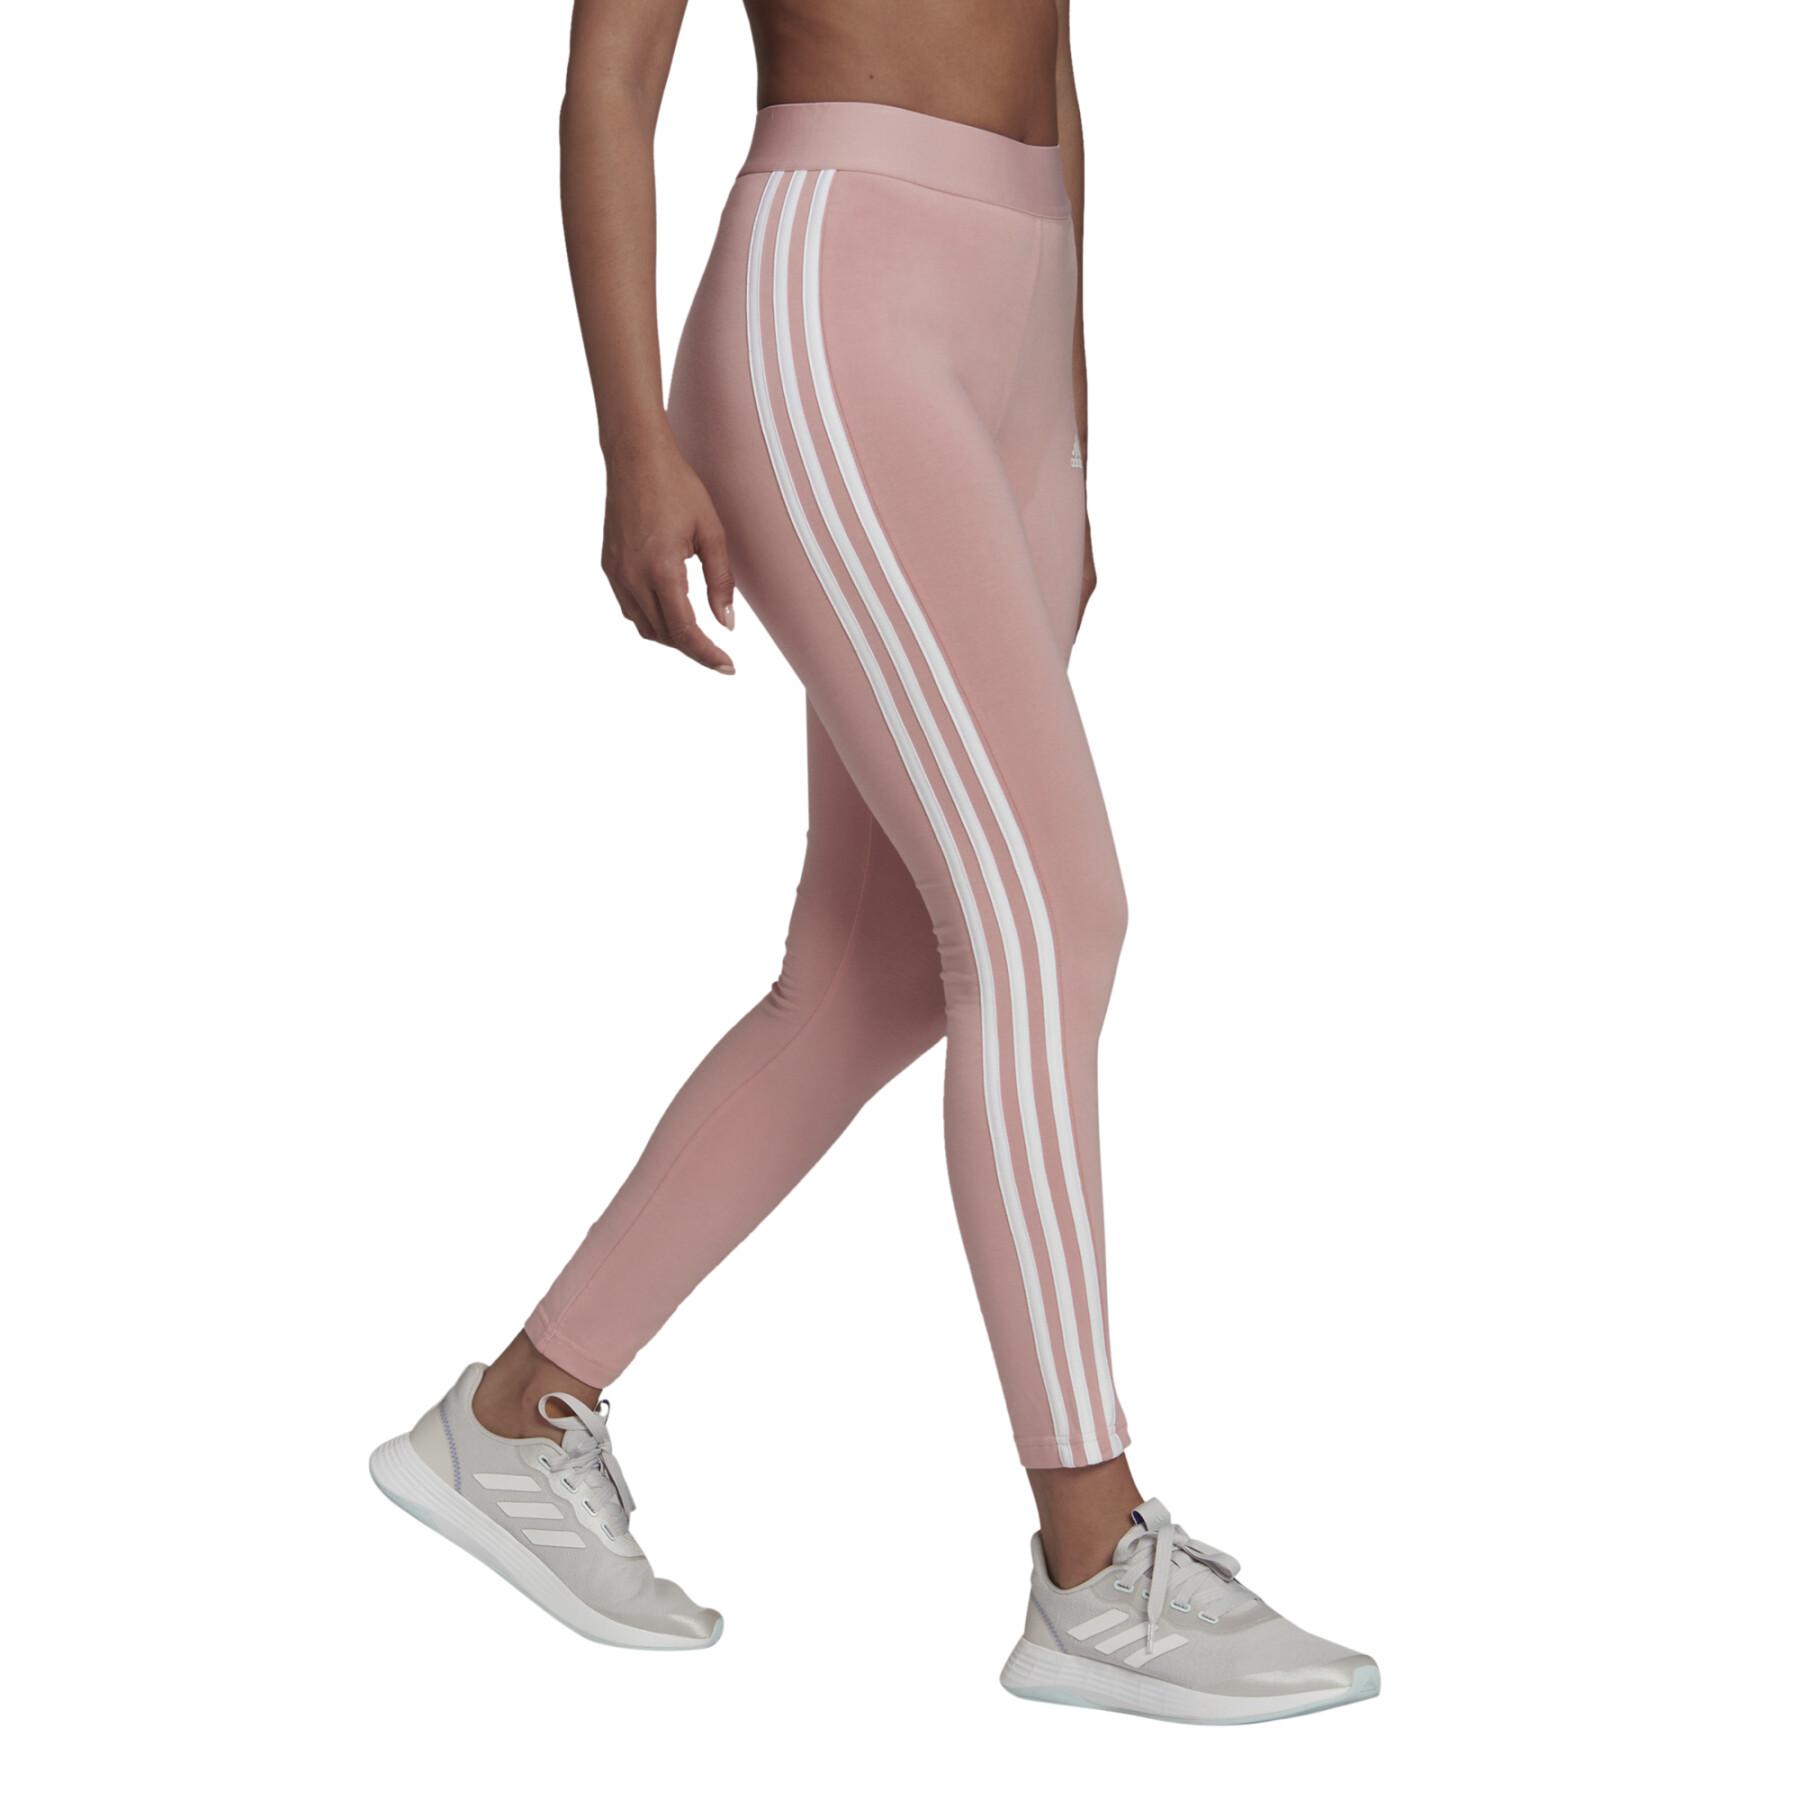 Legging femme adidas LOUNGEWEAR Essentials 3-Stripes